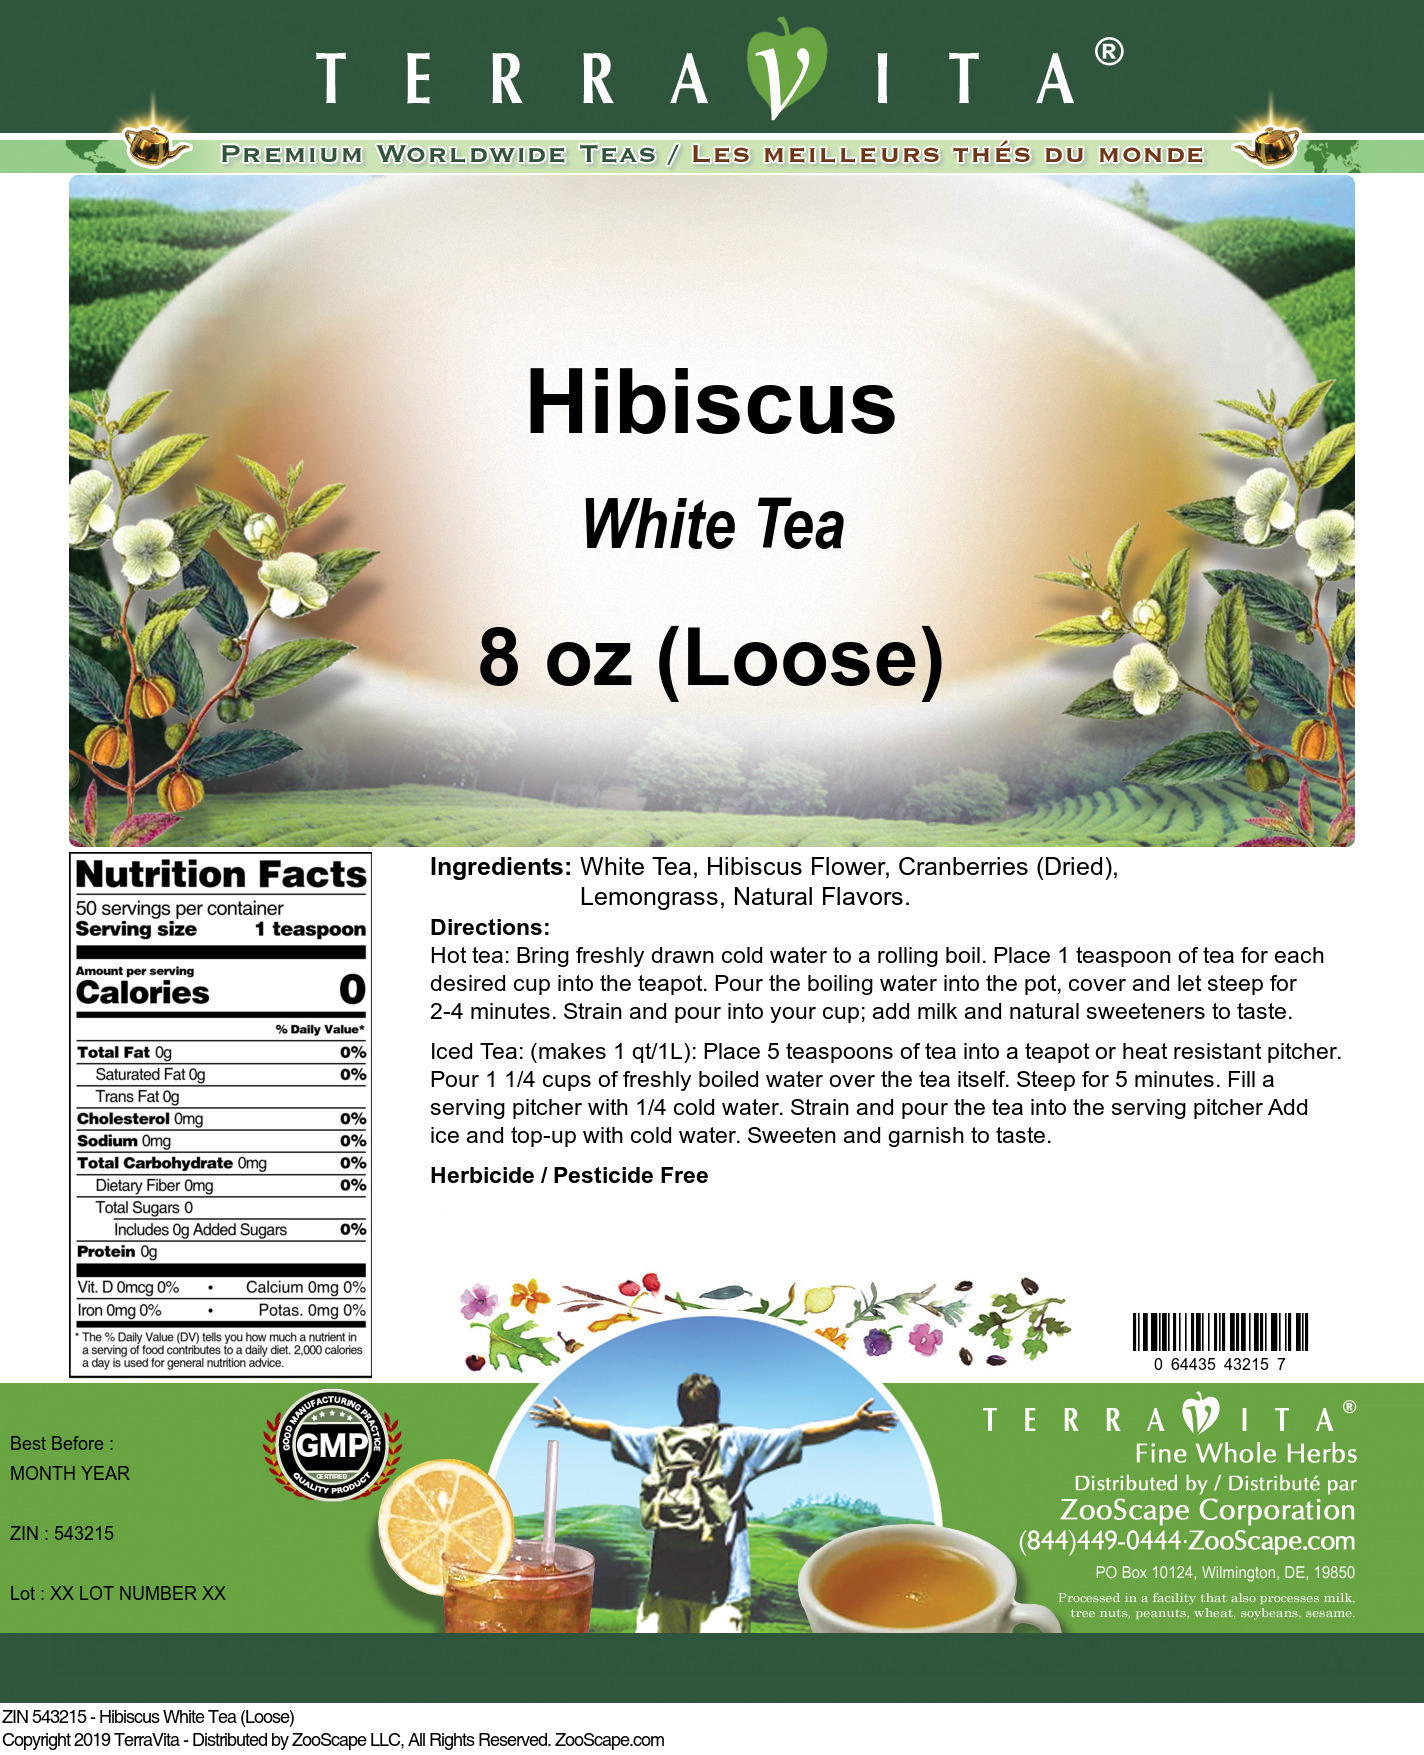 Hibiscus White Tea (Loose) - Label